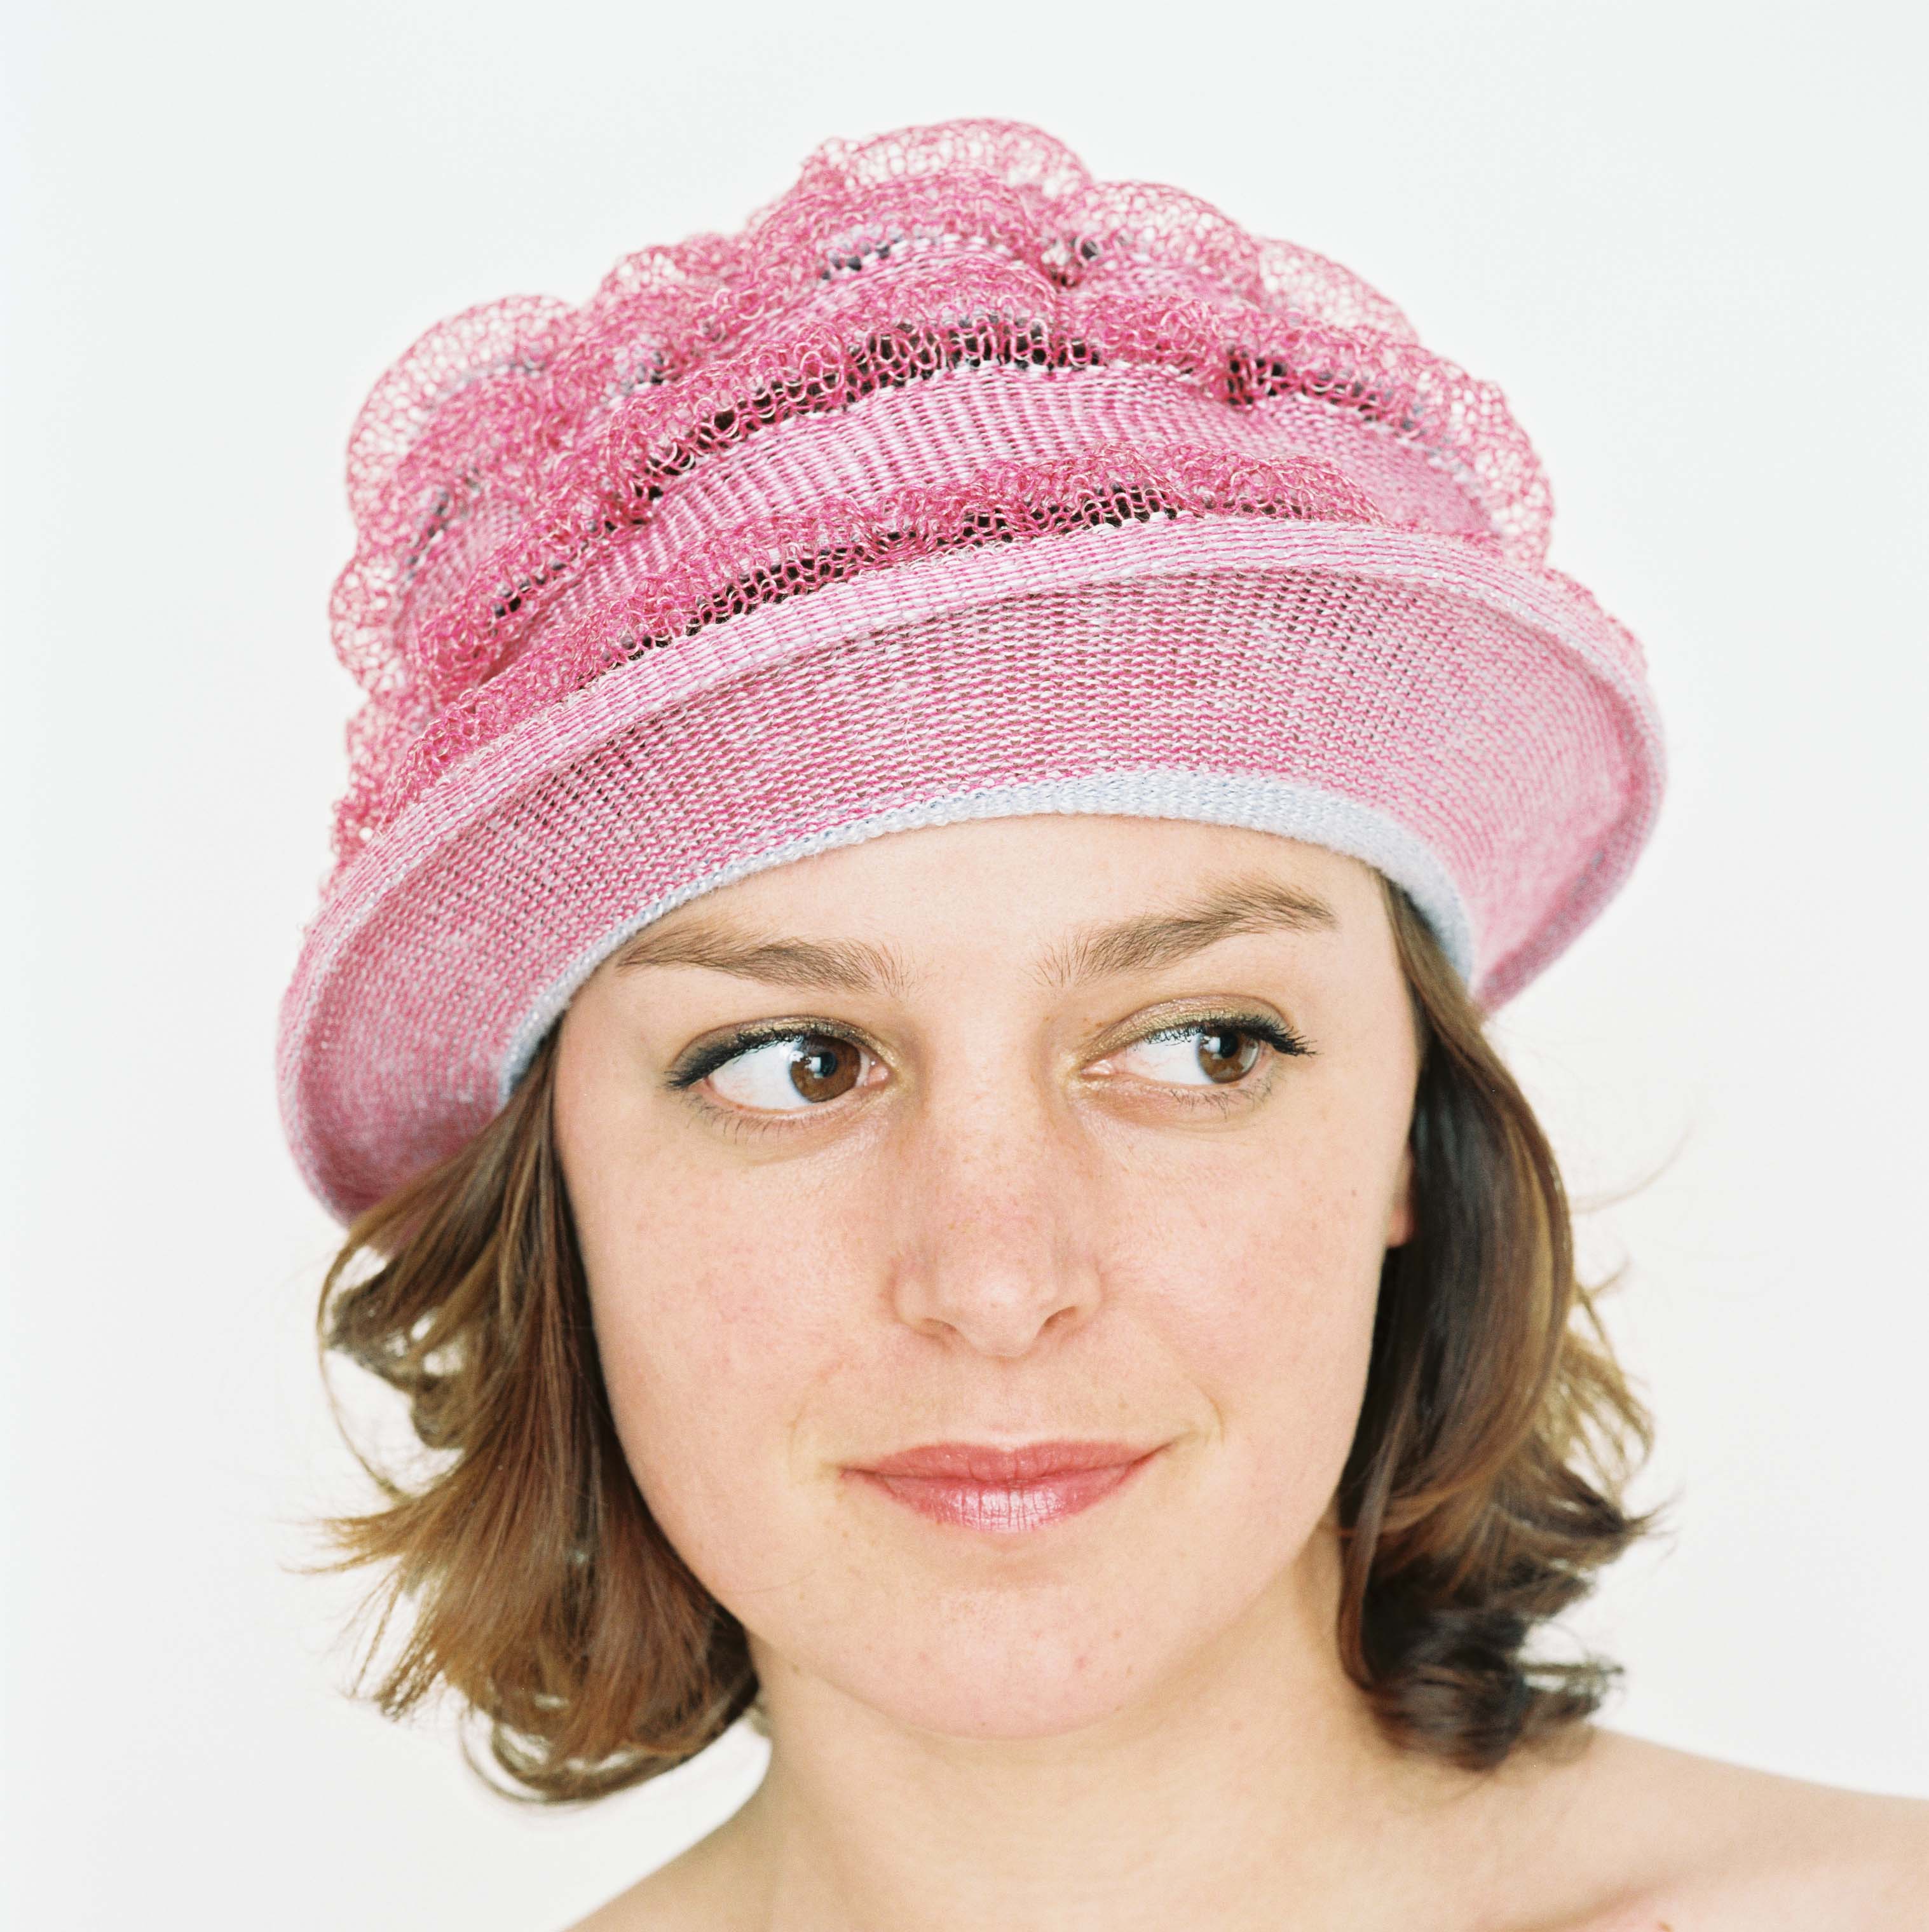 Pink, Transparante Baret / hoed